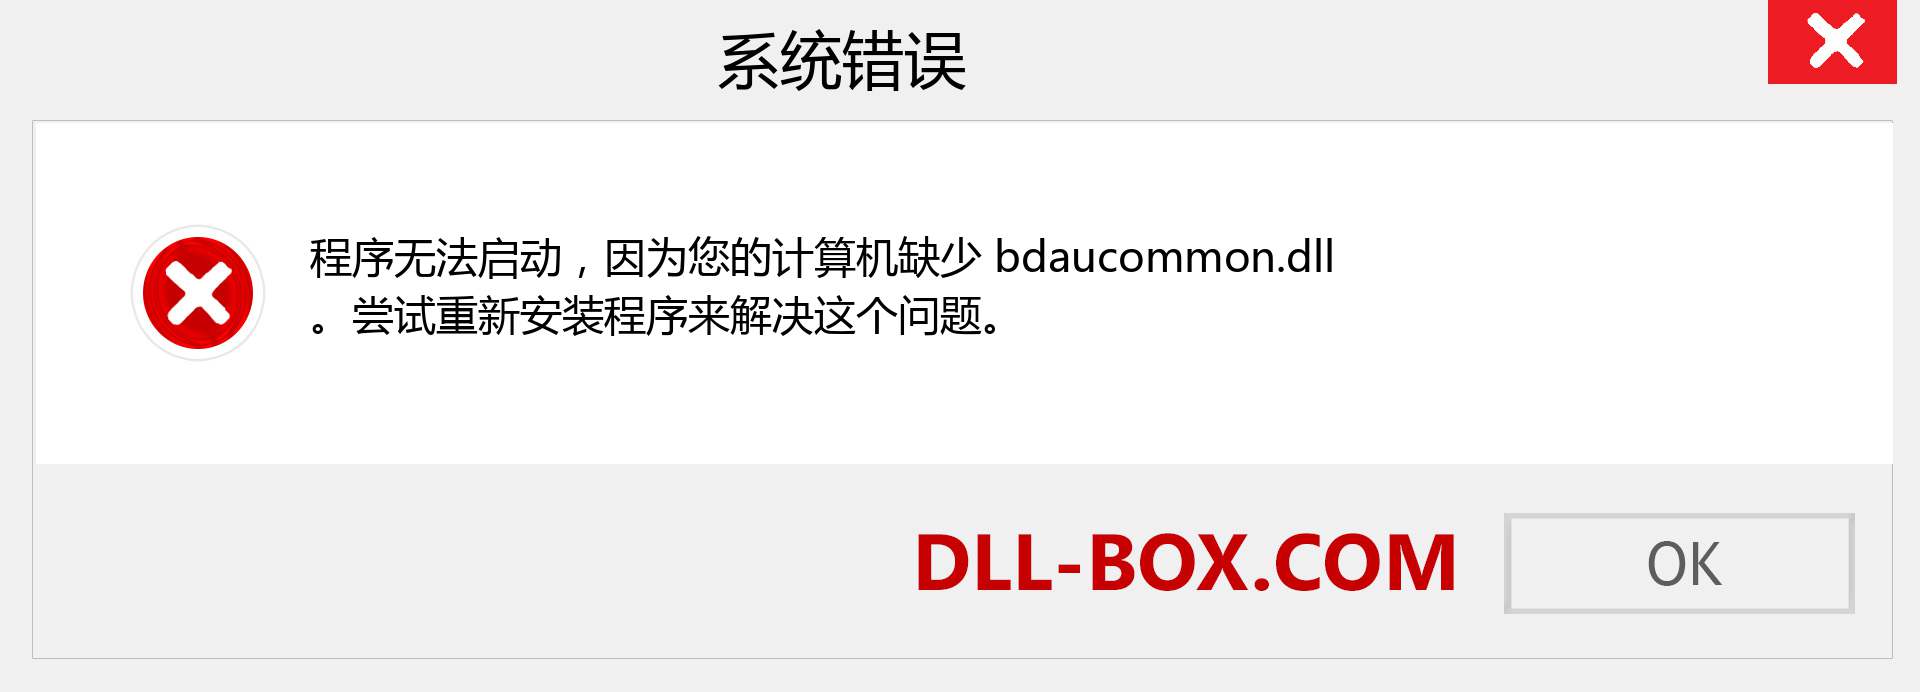 bdaucommon.dll 文件丢失？。 适用于 Windows 7、8、10 的下载 - 修复 Windows、照片、图像上的 bdaucommon dll 丢失错误